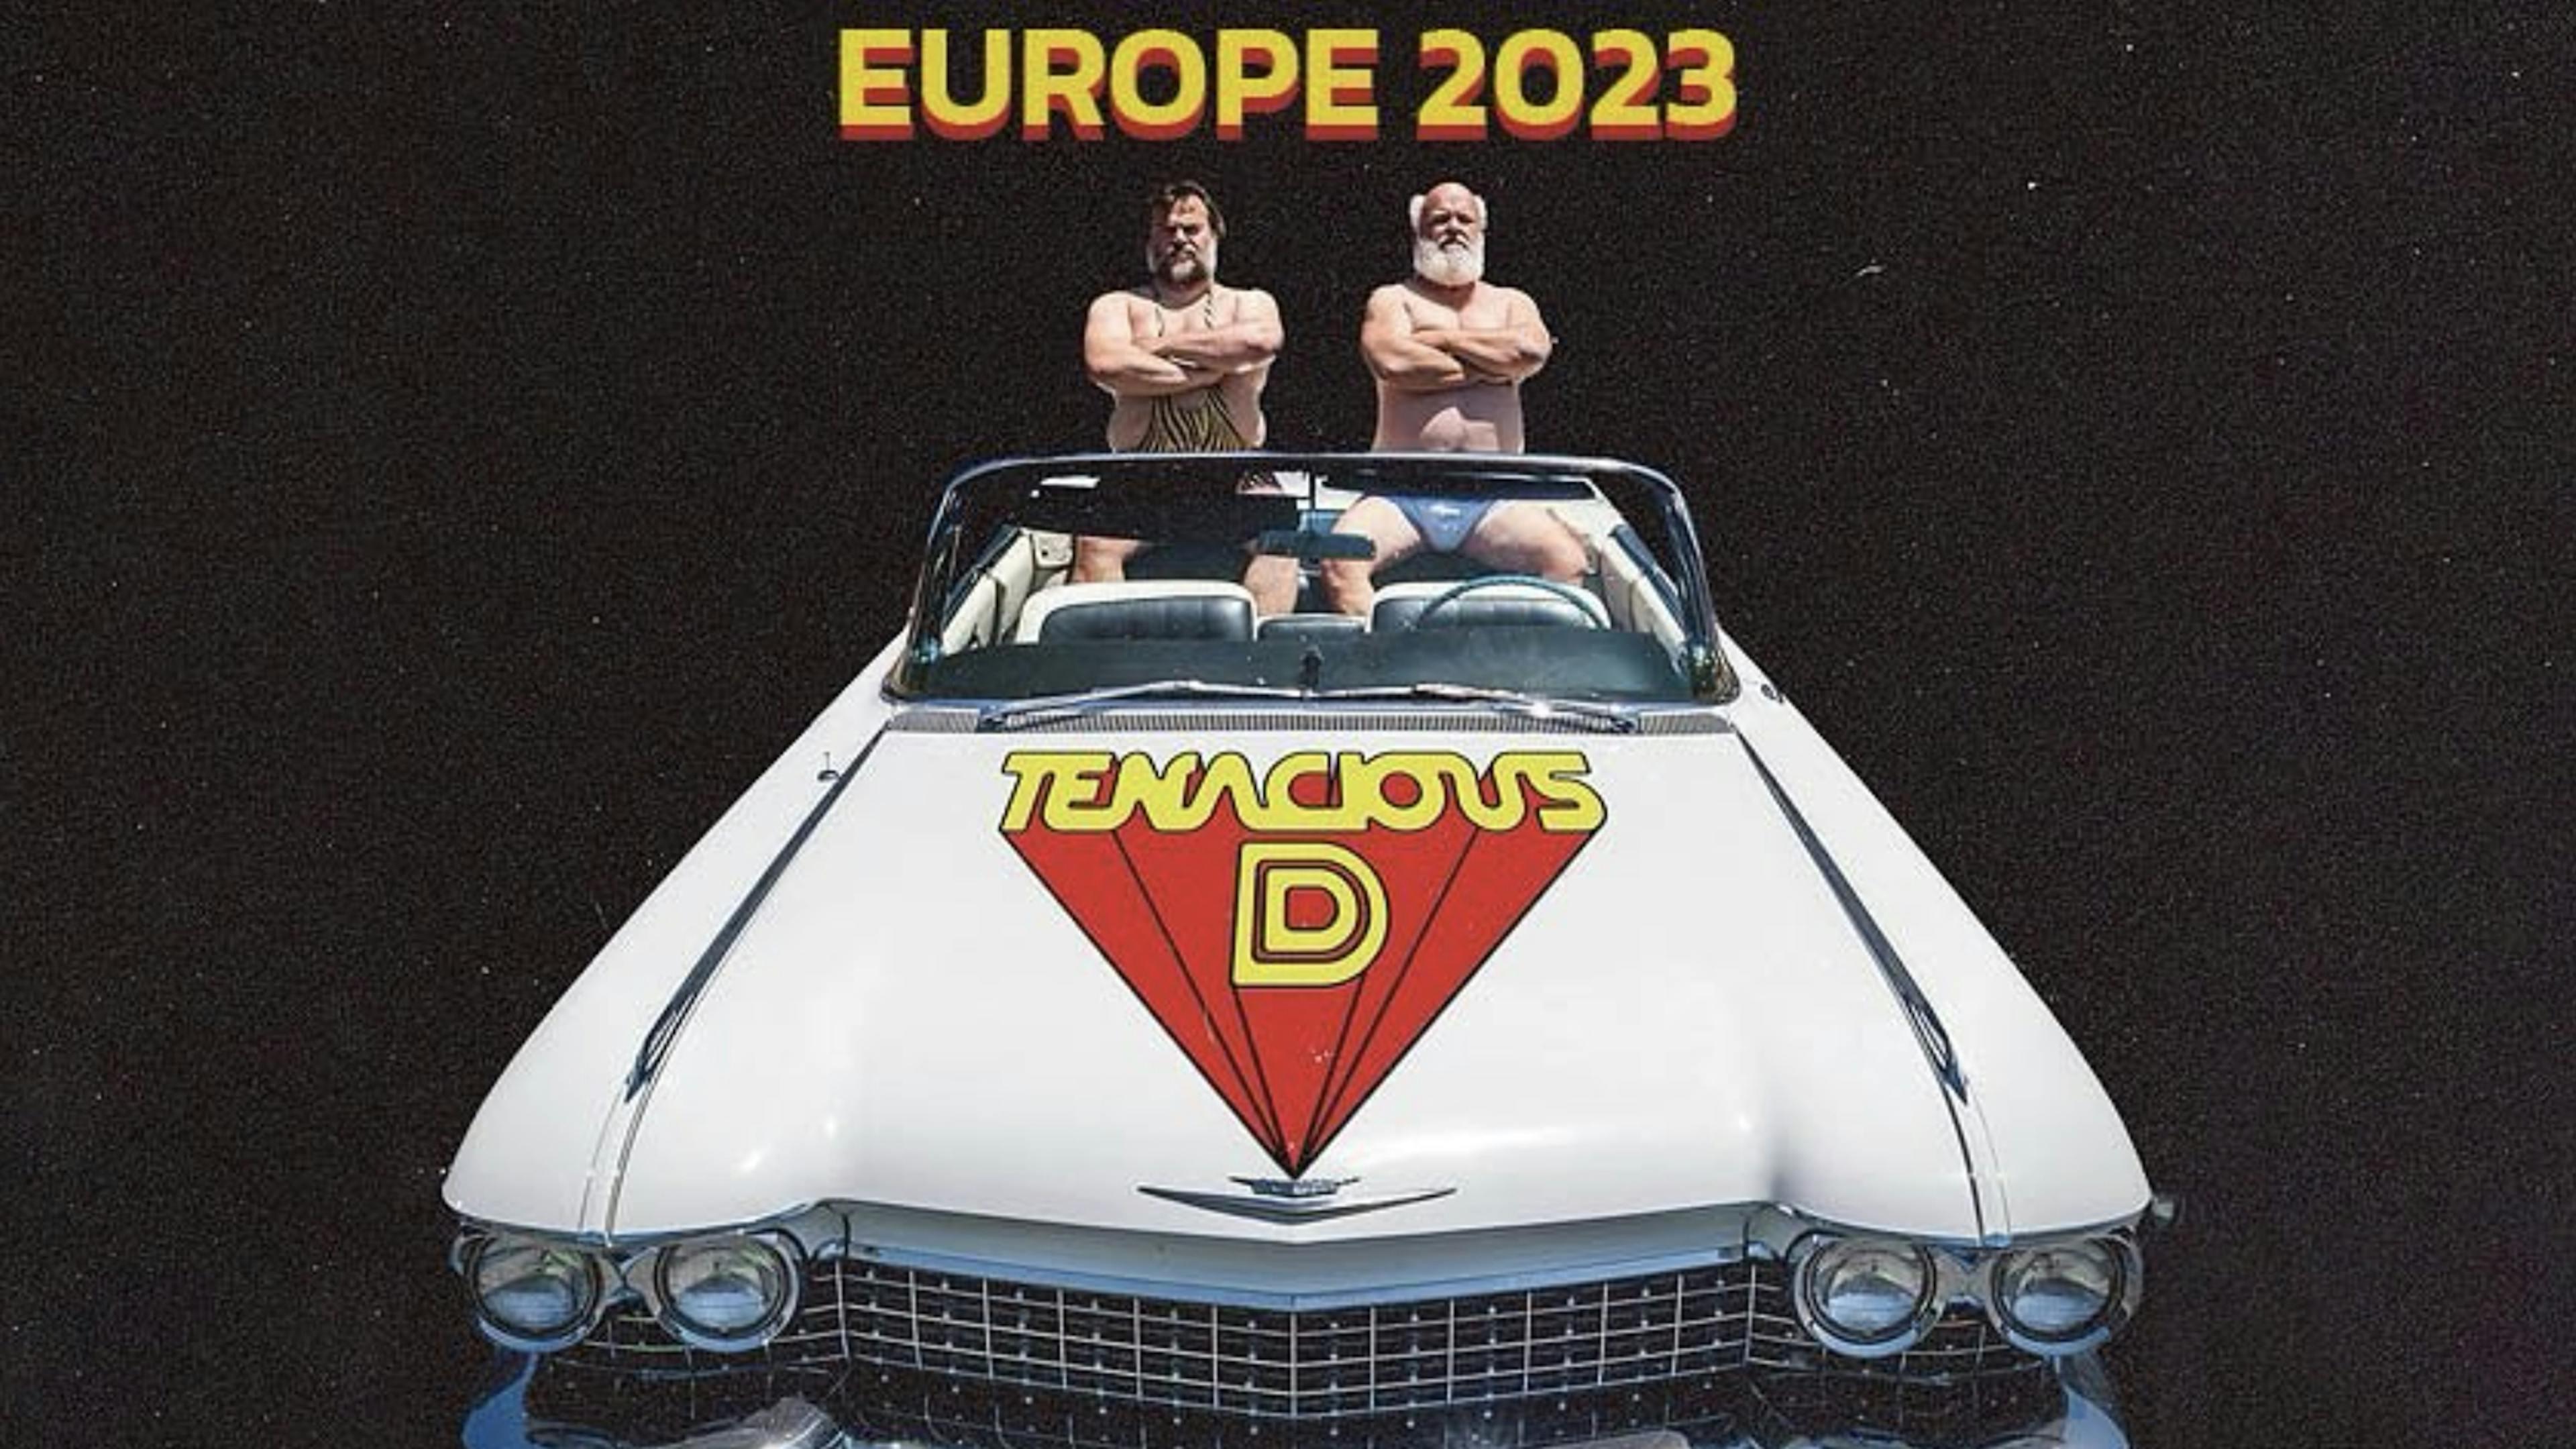 Tenacious D announce 2023 European tour including London date